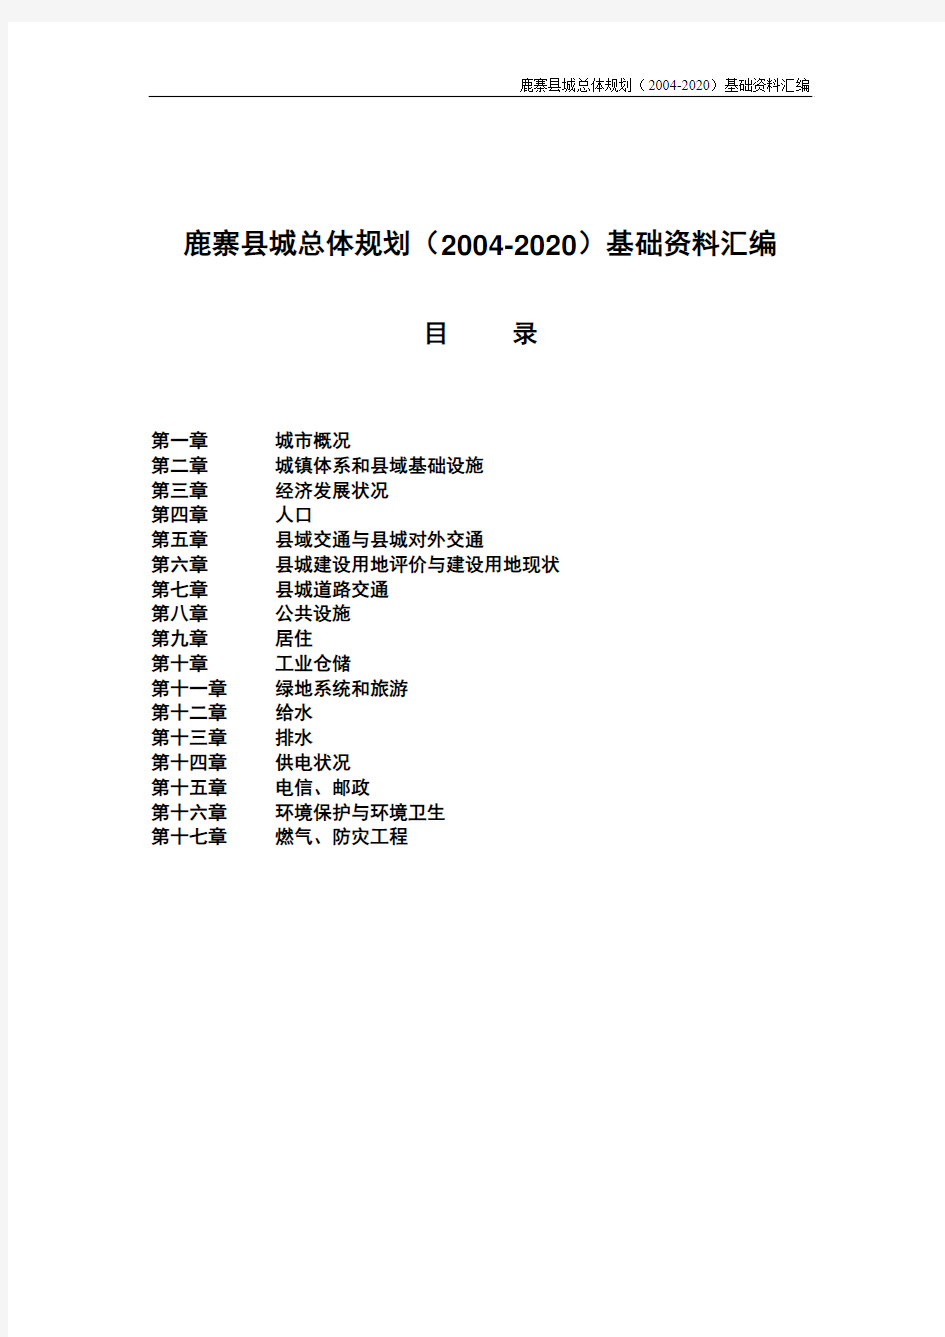 鹿寨县城总体规划(2004-2020)基础资料汇编